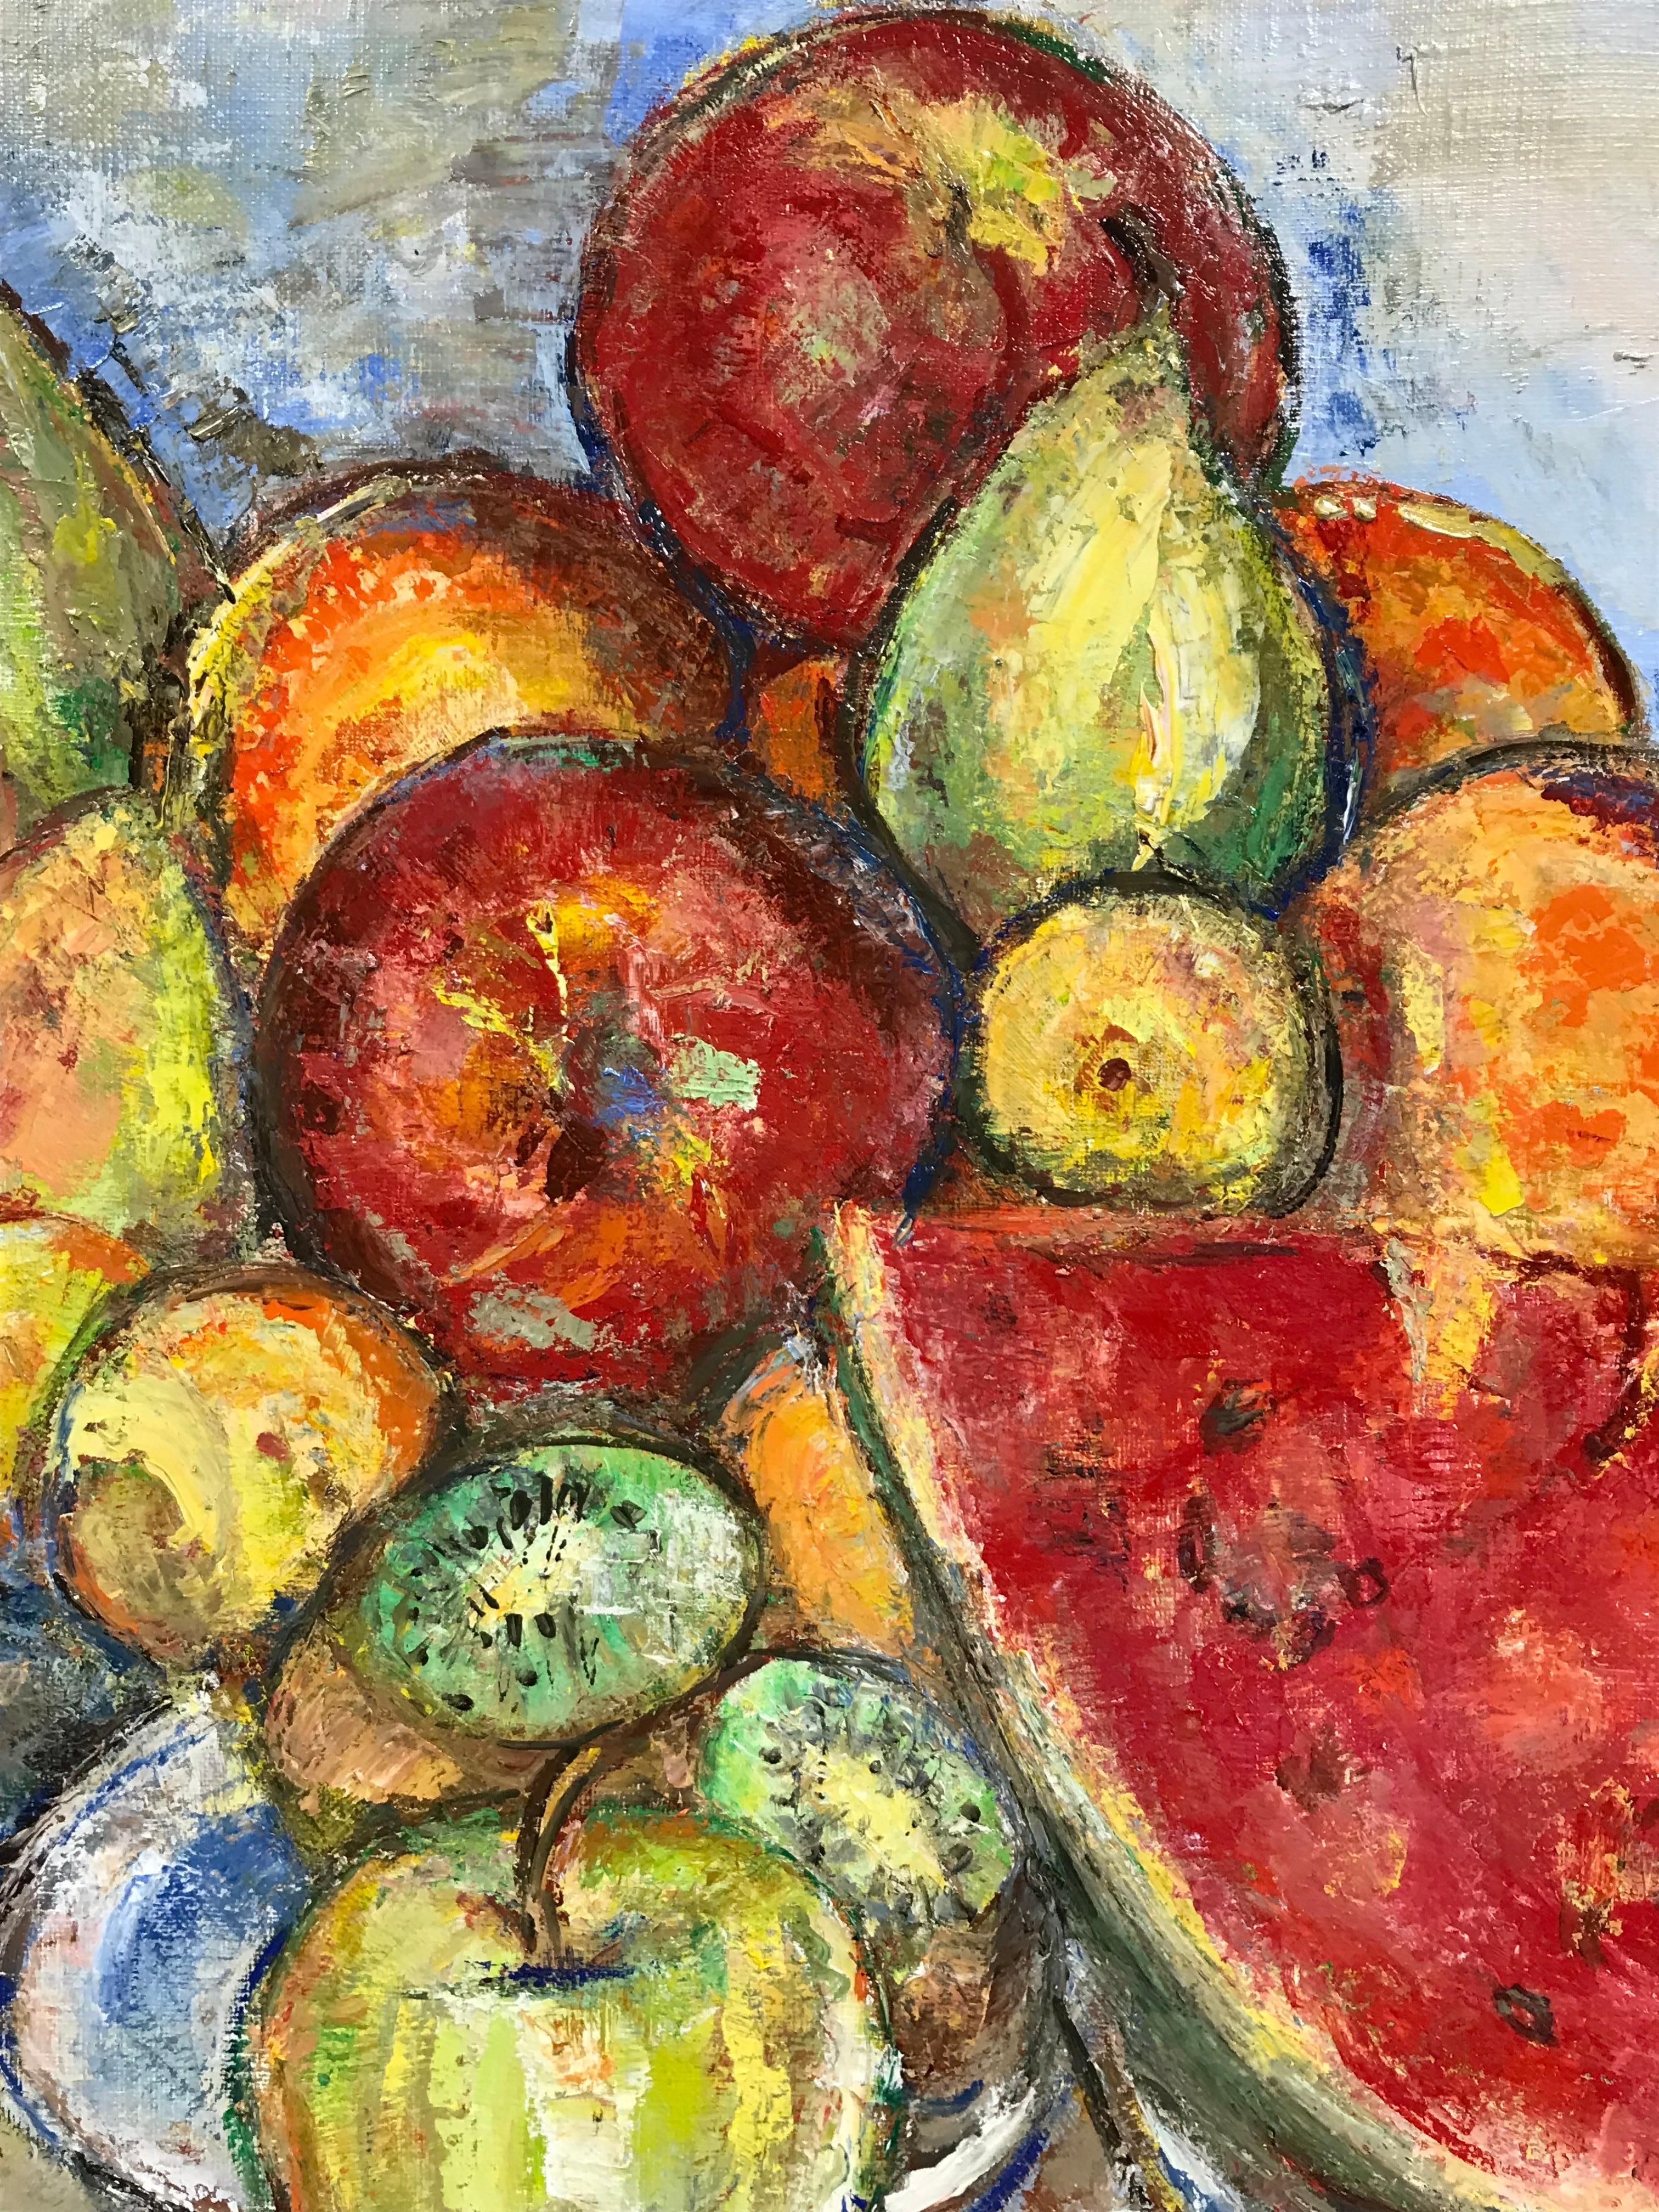 Nature morte de fruits (pommes, pastèques, oranges, bananes)
par Maria Tort Xirau (catalane, 1924-2018)
signé en dans le coin inférieur
daté de 1993
peinture à l'huile sur toile, encadrée

toile : 18.5 x 24 pouces
encadré : 22.5 x 28 pouces

Très